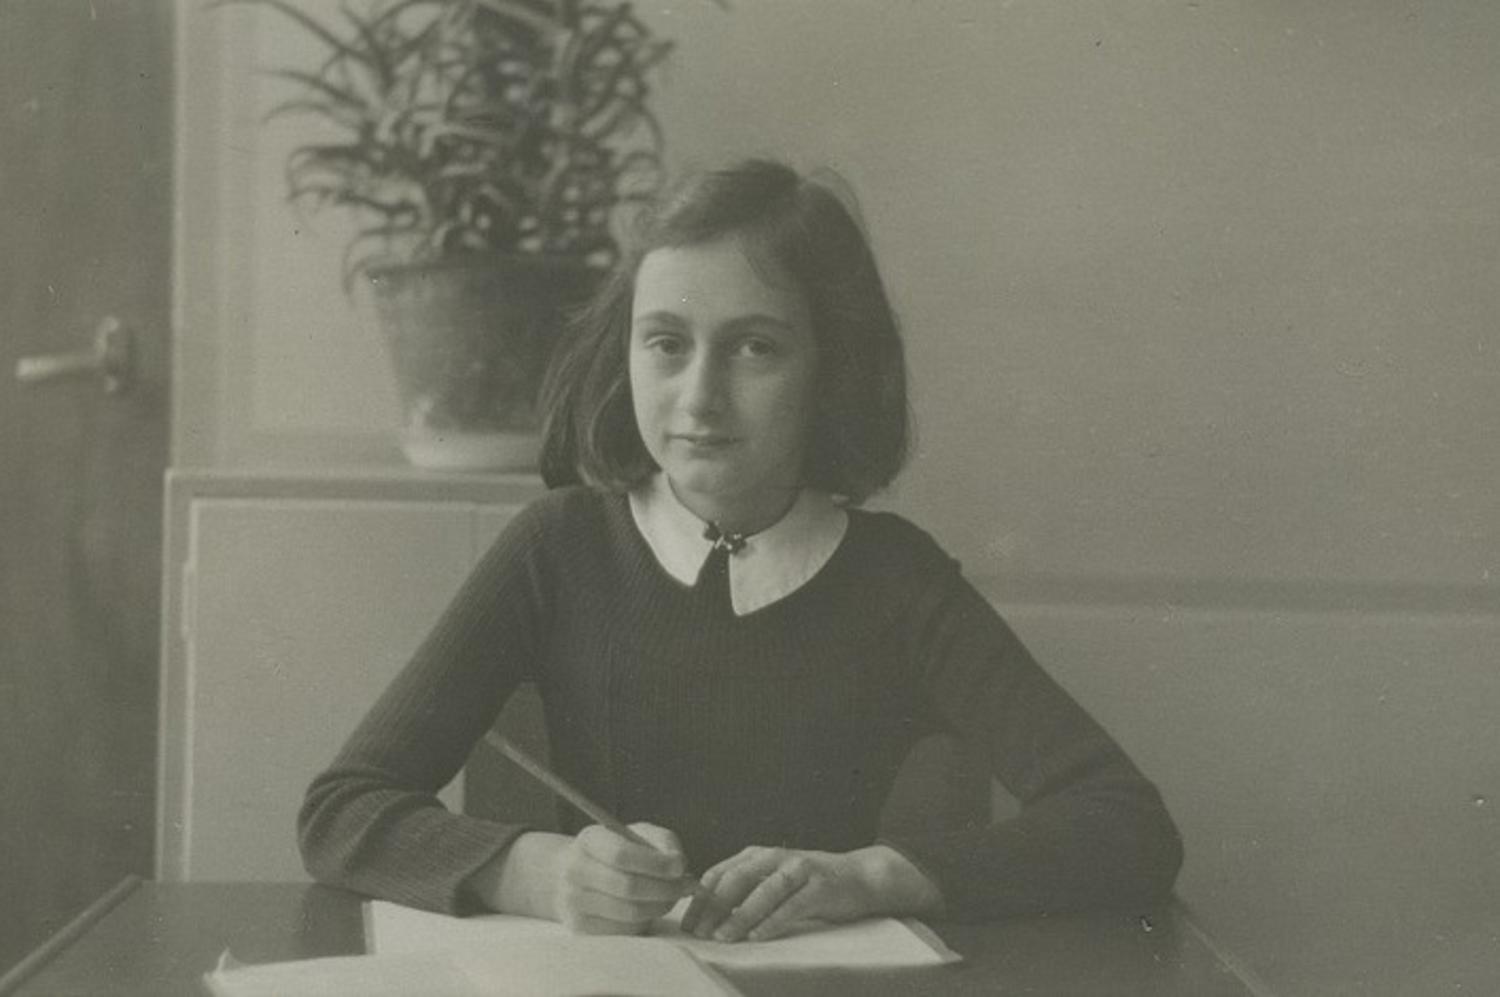 Anne Frank. Holocaust Diaries